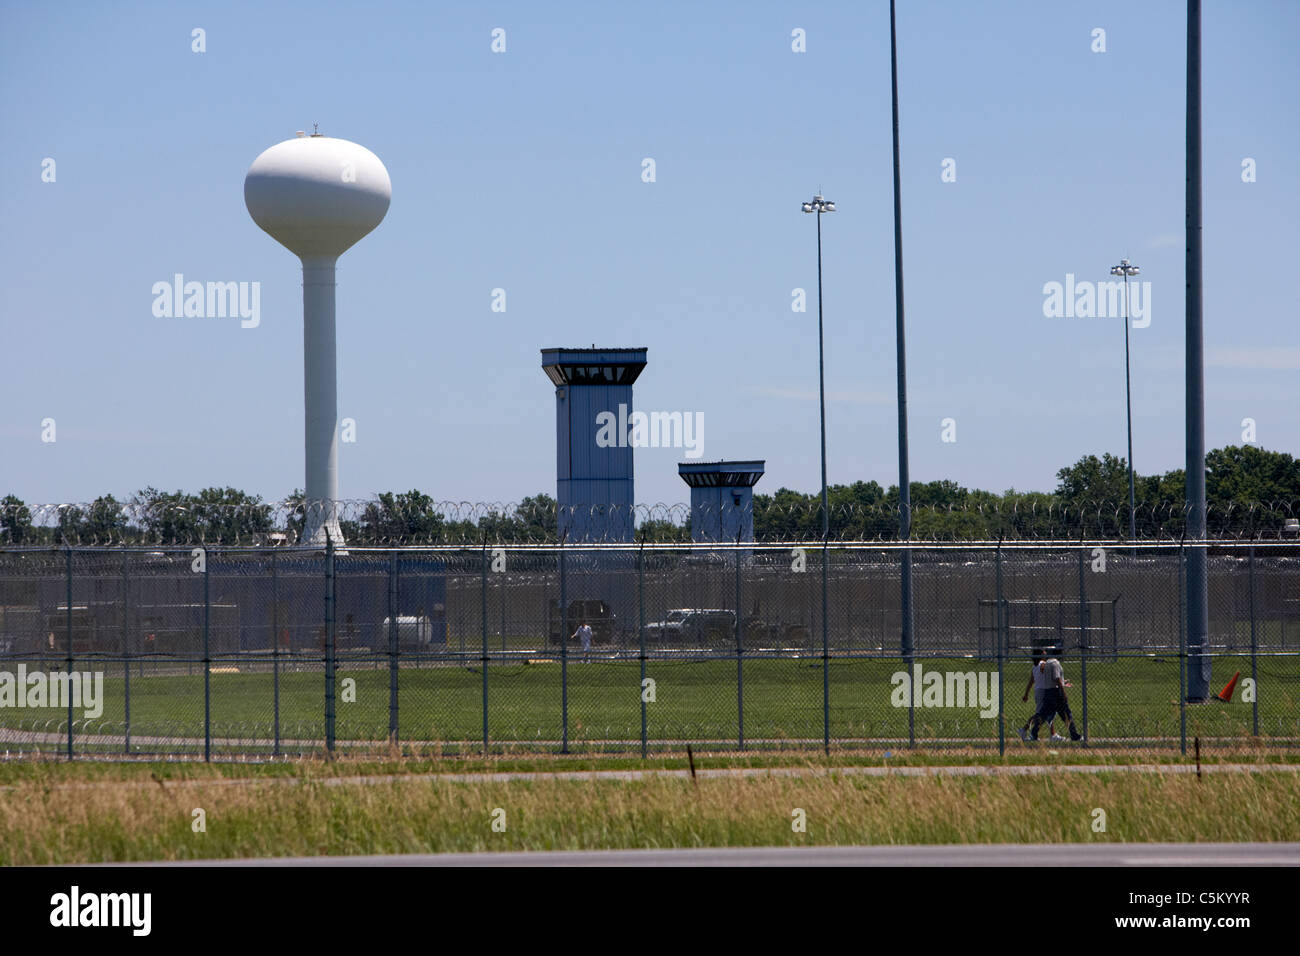 Wasserturm und Sicherheit Wachtürme united states Gefängnis Big Muddy River Gefängnis Gefängnis Justizvollzugsanstalt usa us Stockfoto